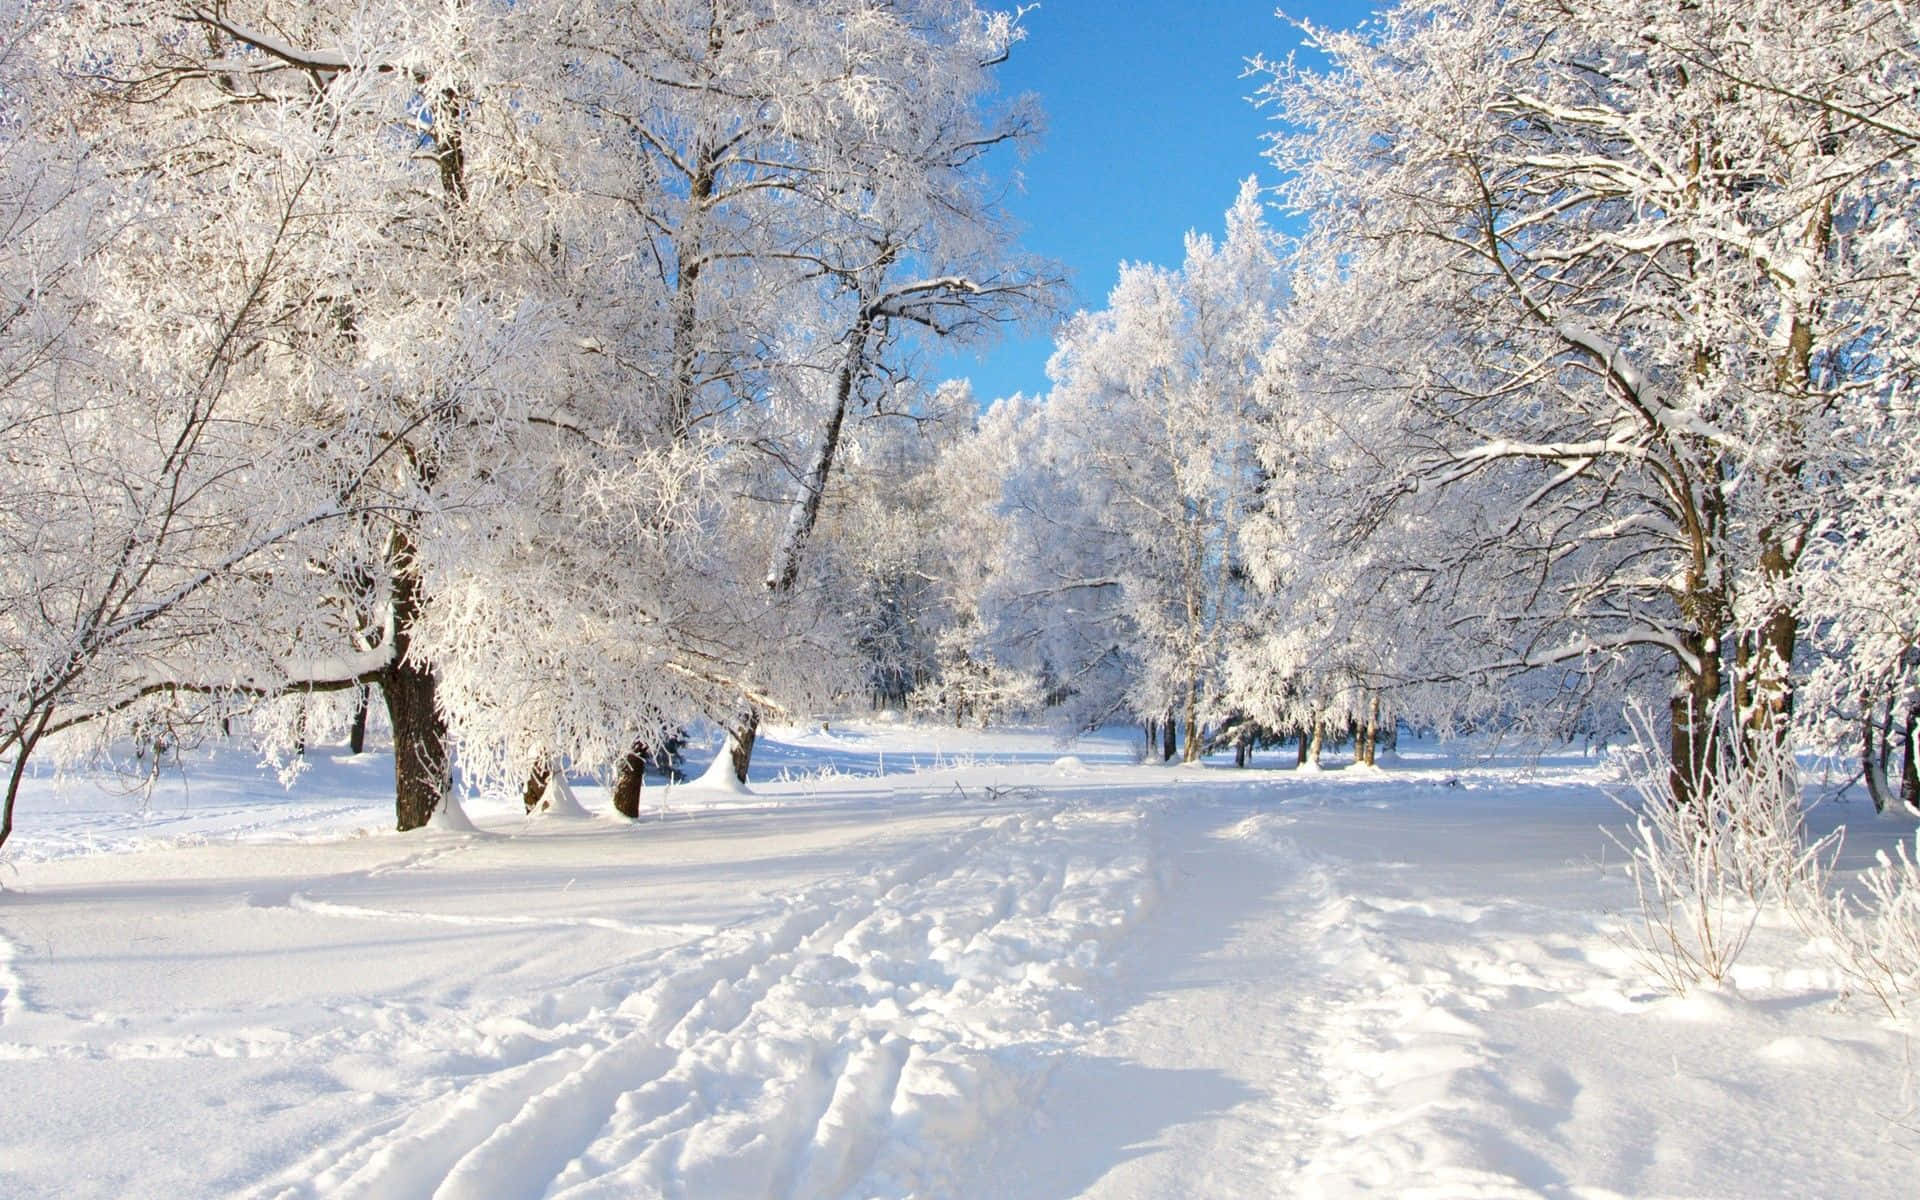 Vinter Wonderland: Inspireret af kraftige snebyger og krystalklare nætter gemmer dette mønster smukke snefnug og et magisk landskab af glitrende fyrretræer.